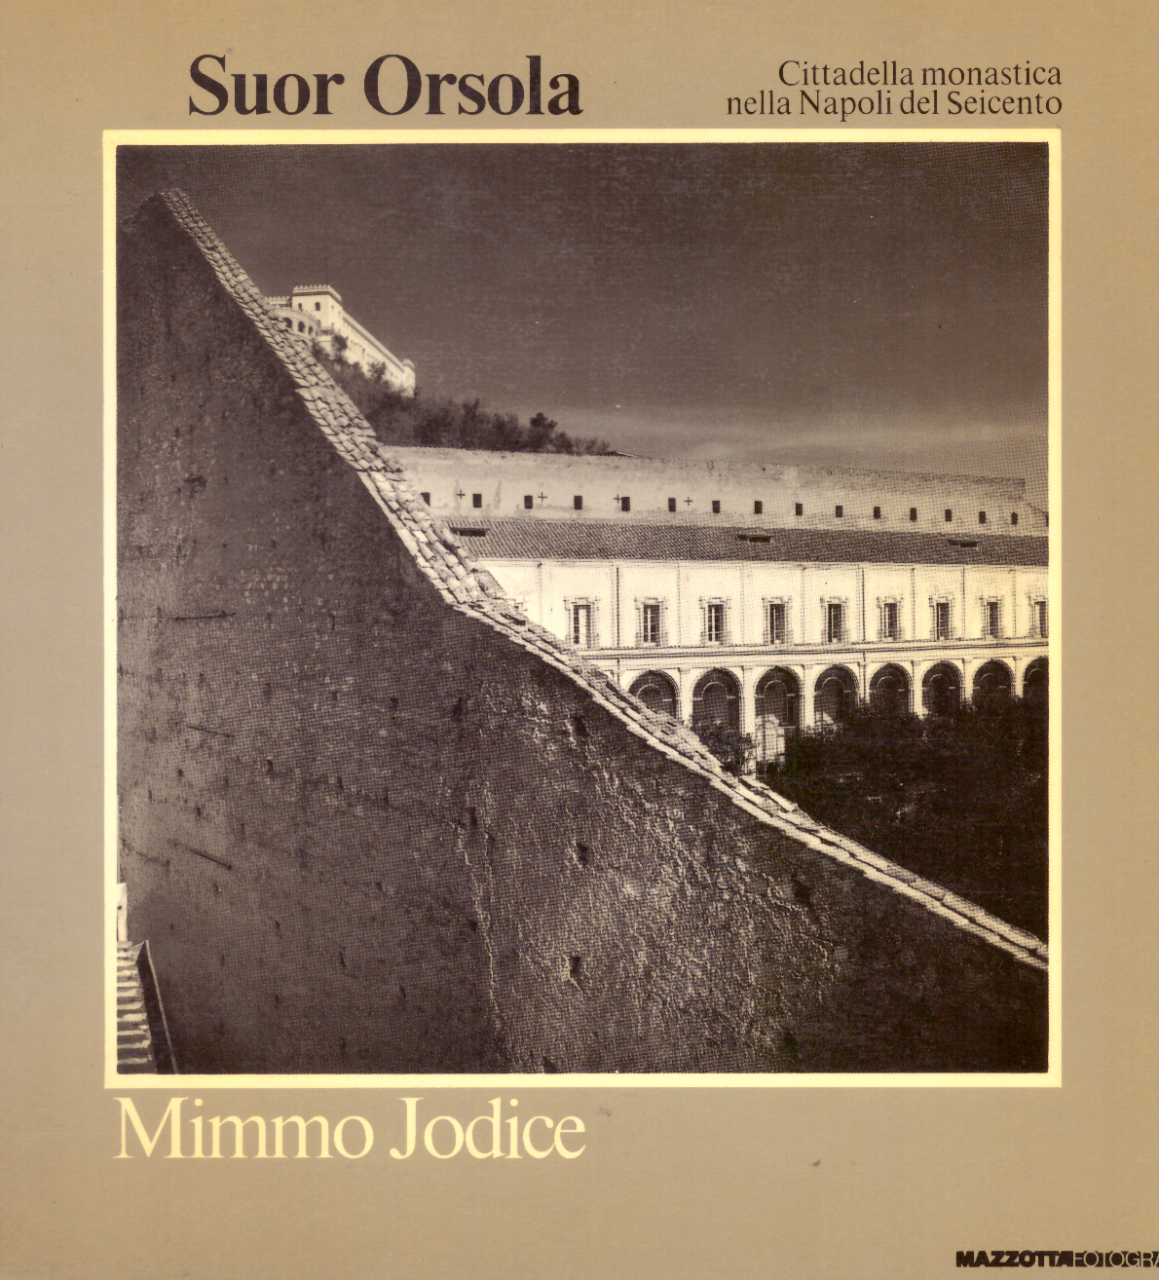 Suor Orsola, cittadella monastica nella Napoli del seicento